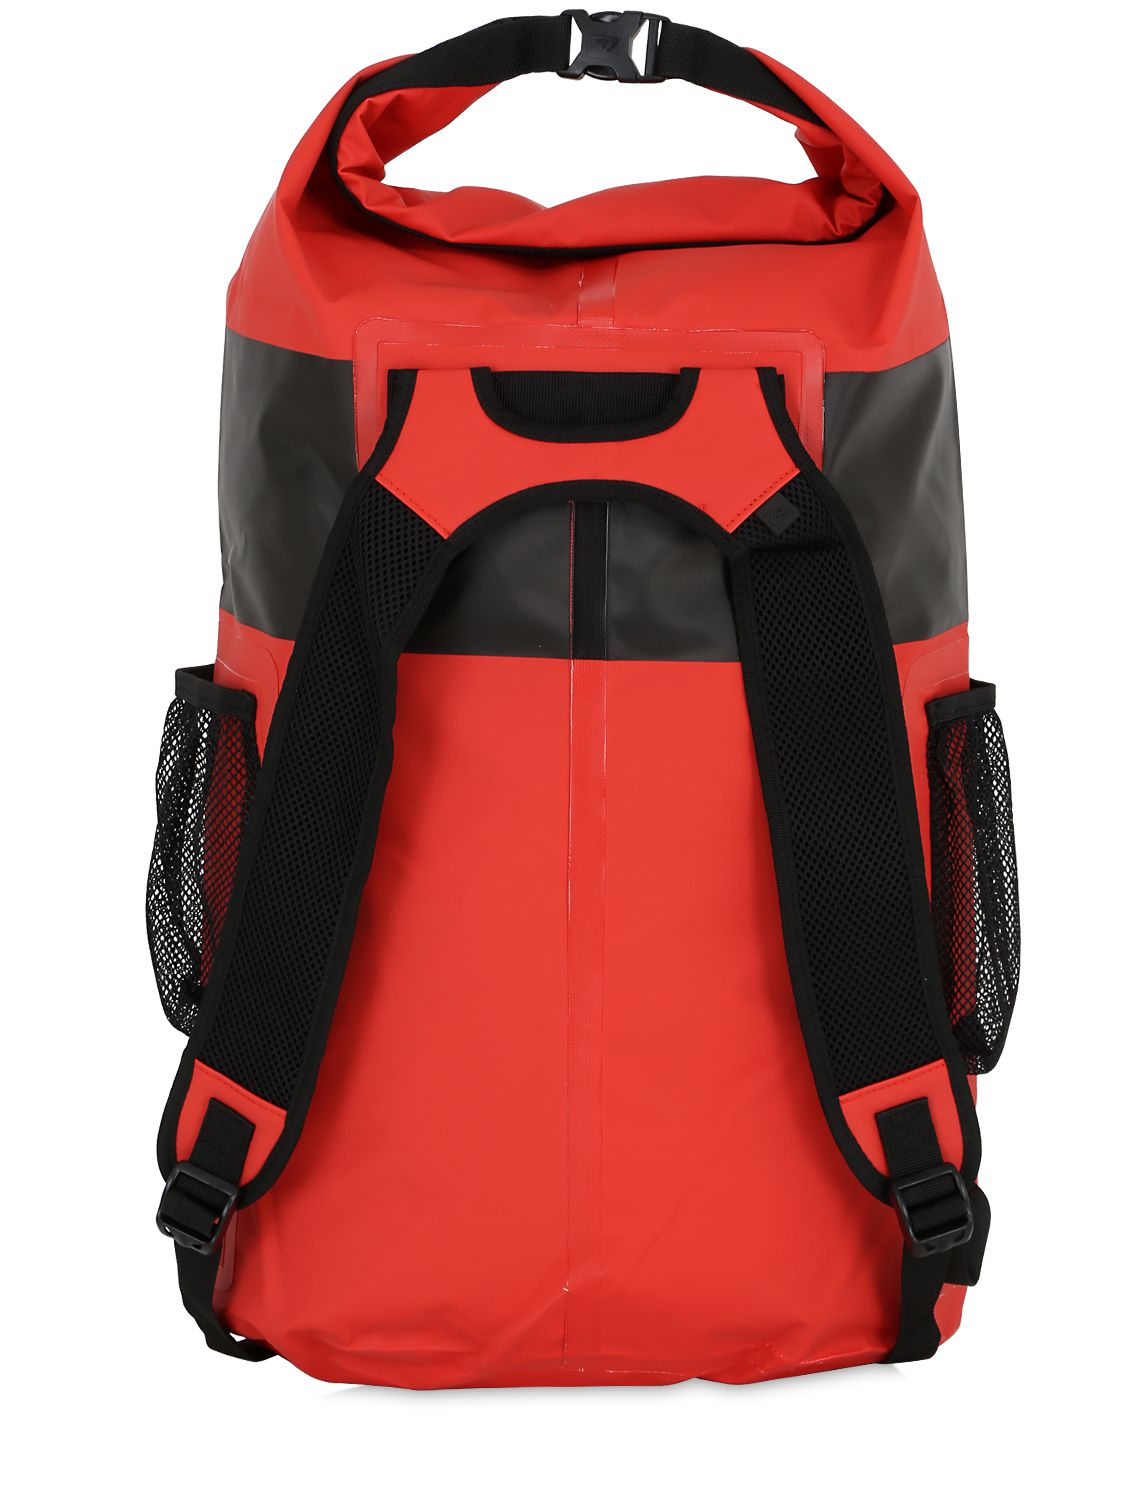 Quiksilver 20l Sea Stash Waterproof Backpack in Red/Black (Black) for